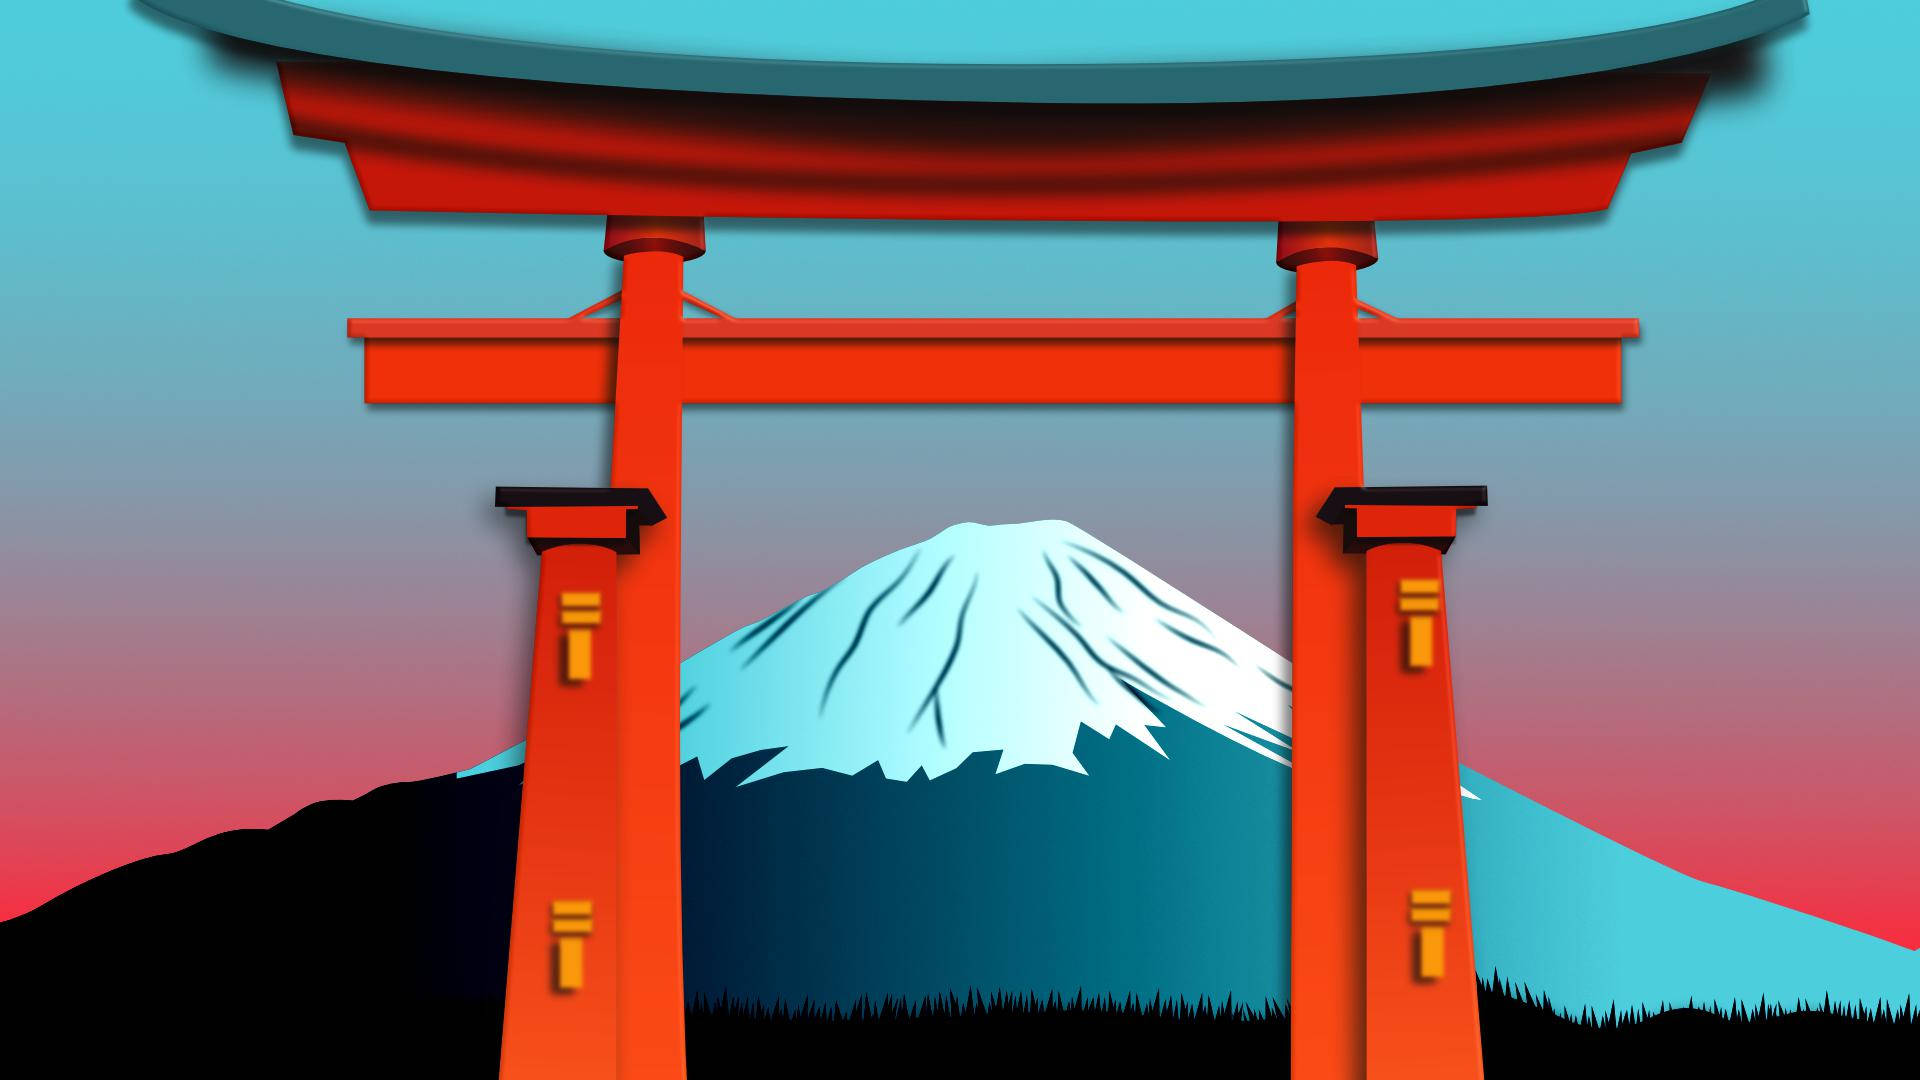 Puertatorii Y El Monte Fuji Fondo de pantalla